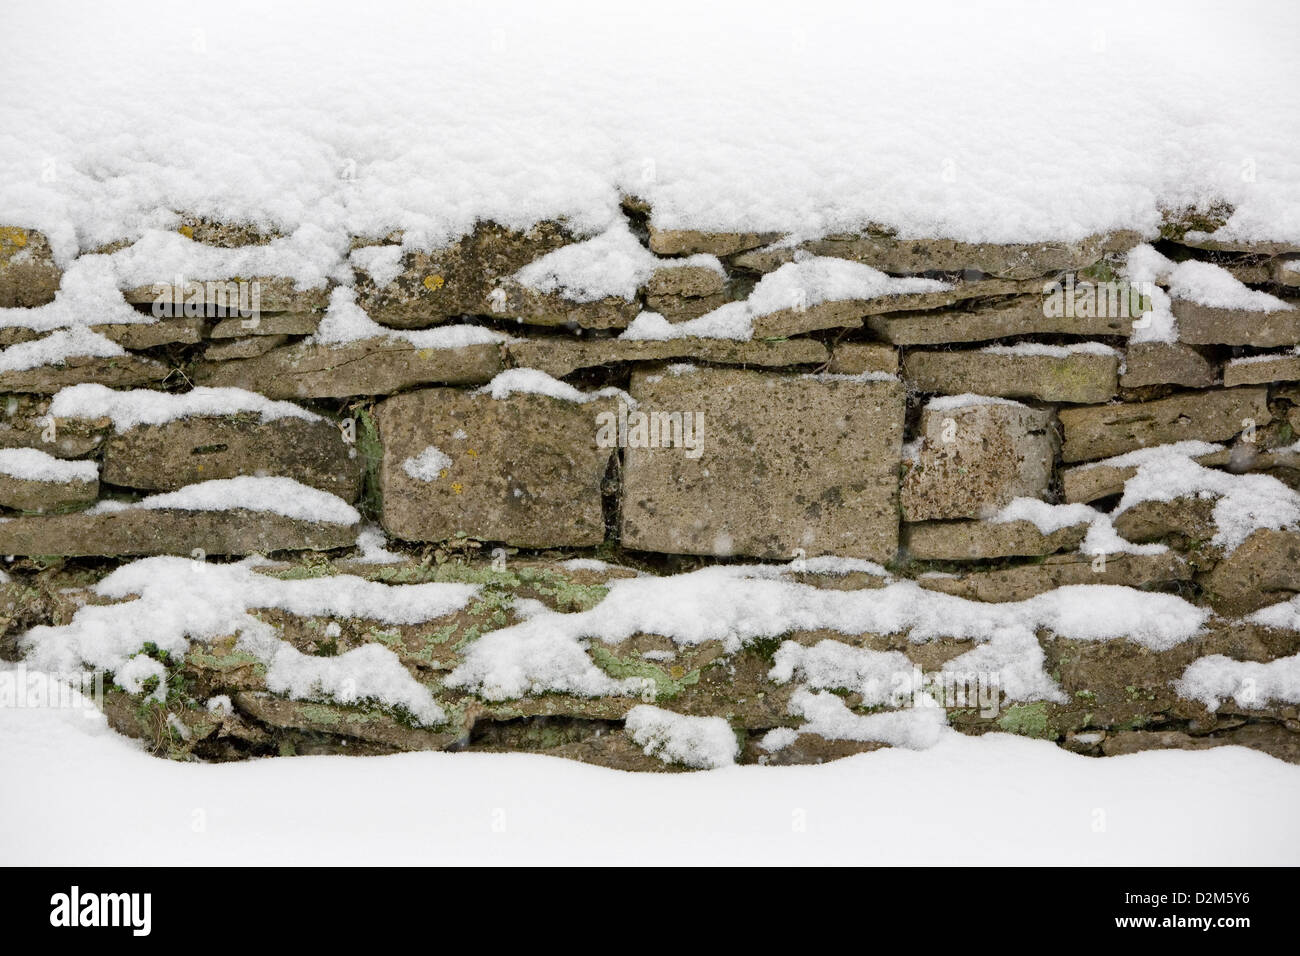 Sehr alte Cotswold Trockenmauer, die Caperat Flechten (Flavoparmelia Caperata) und ist mit Schnee bedeckt. Stockfoto